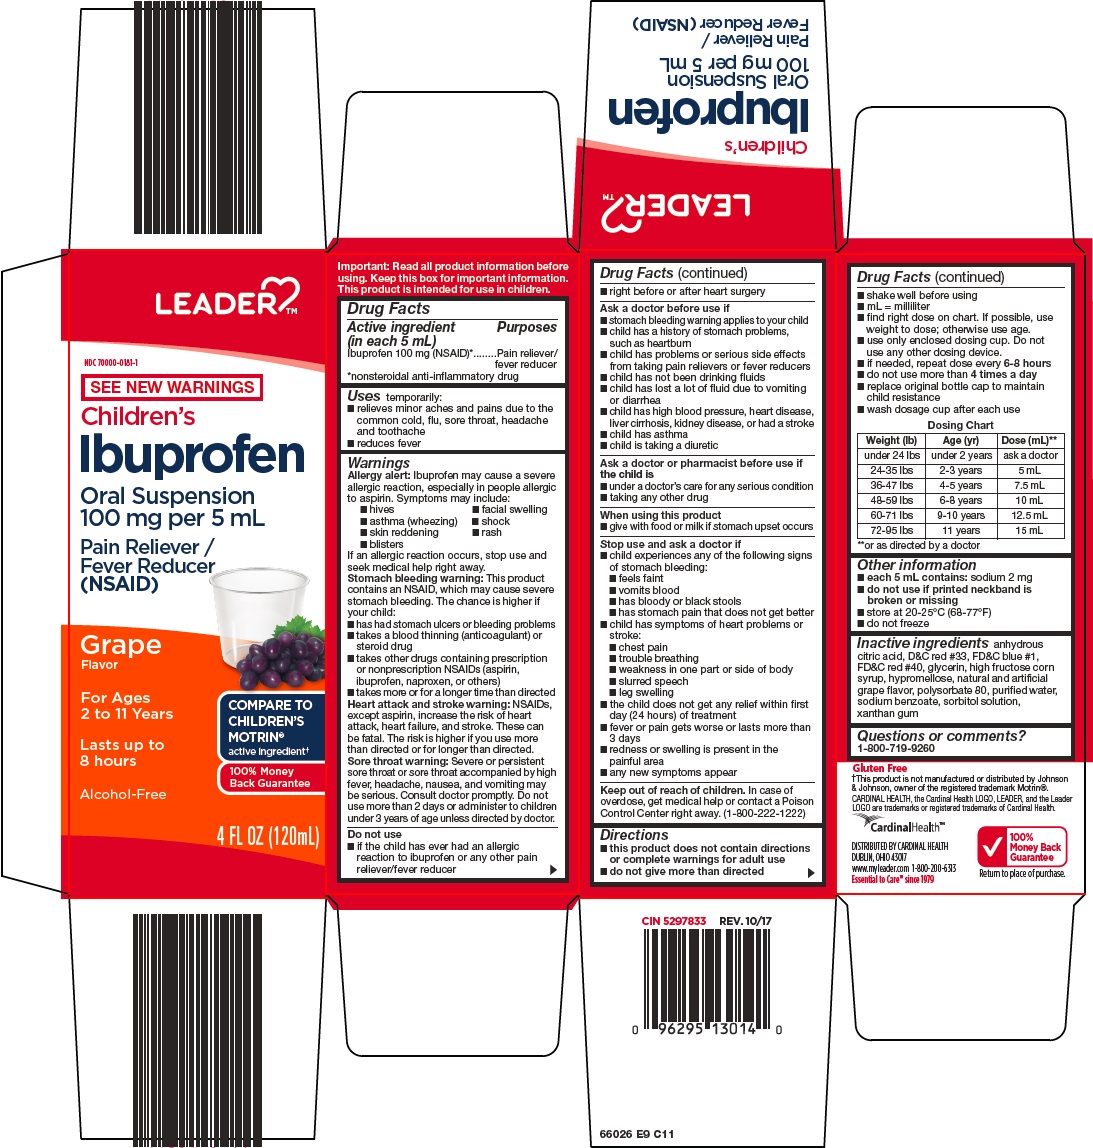 660E9-childrens-ibuprofen.jpg